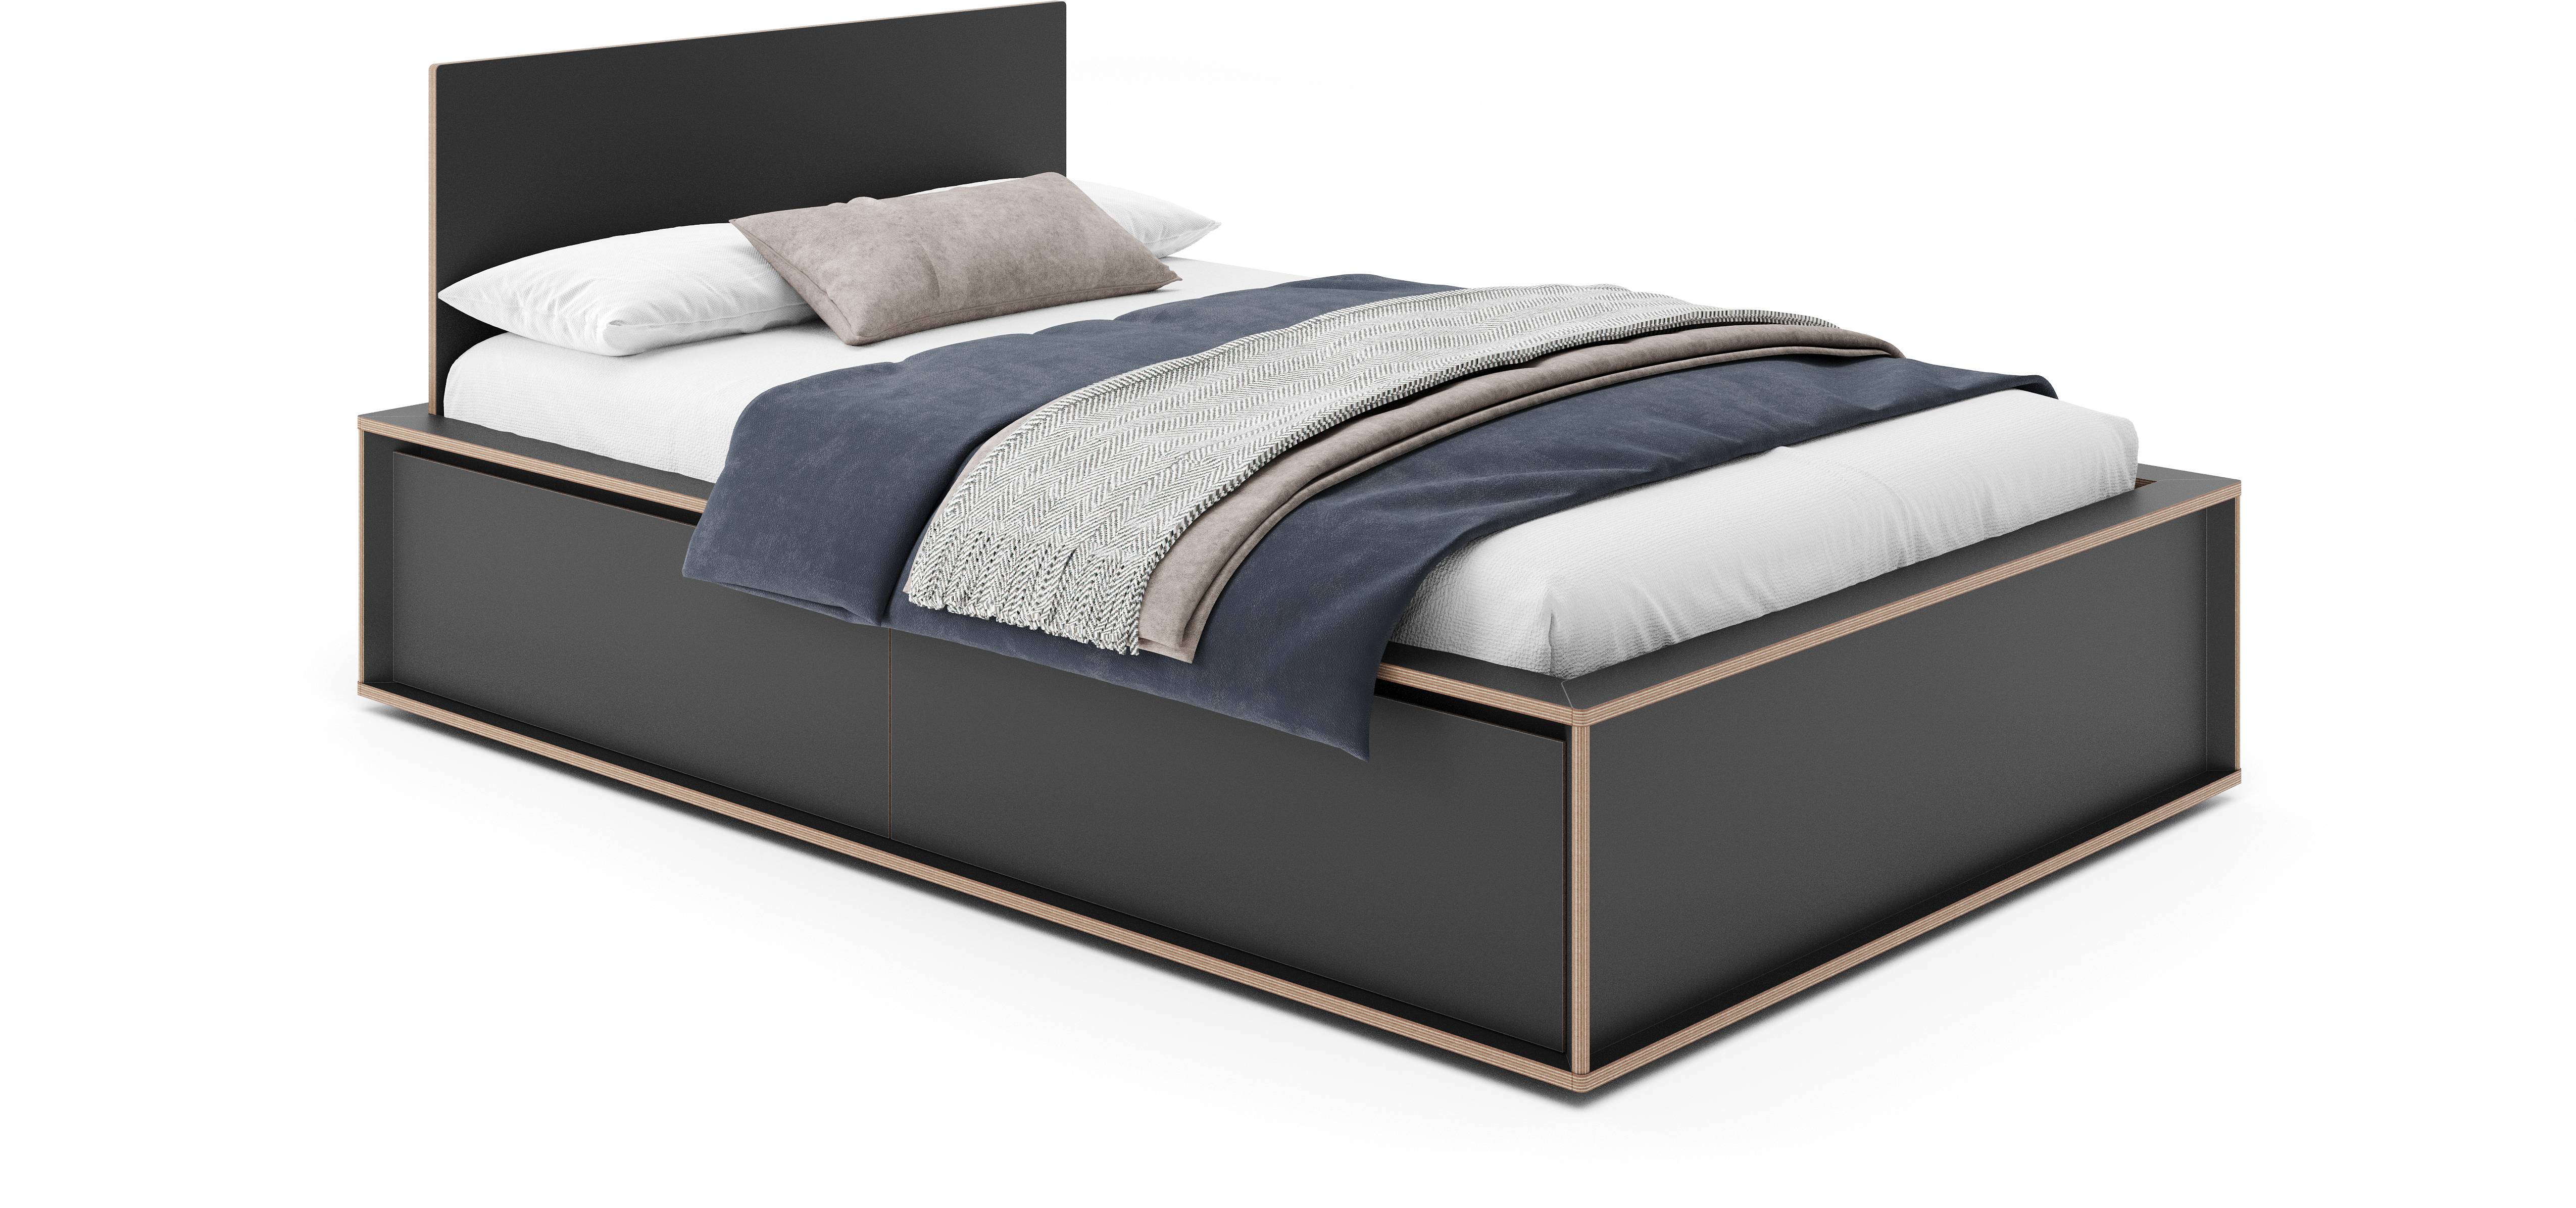 SPAZE Bett mit Kopfteil mit 3 Schubkästen - KAQTU Design